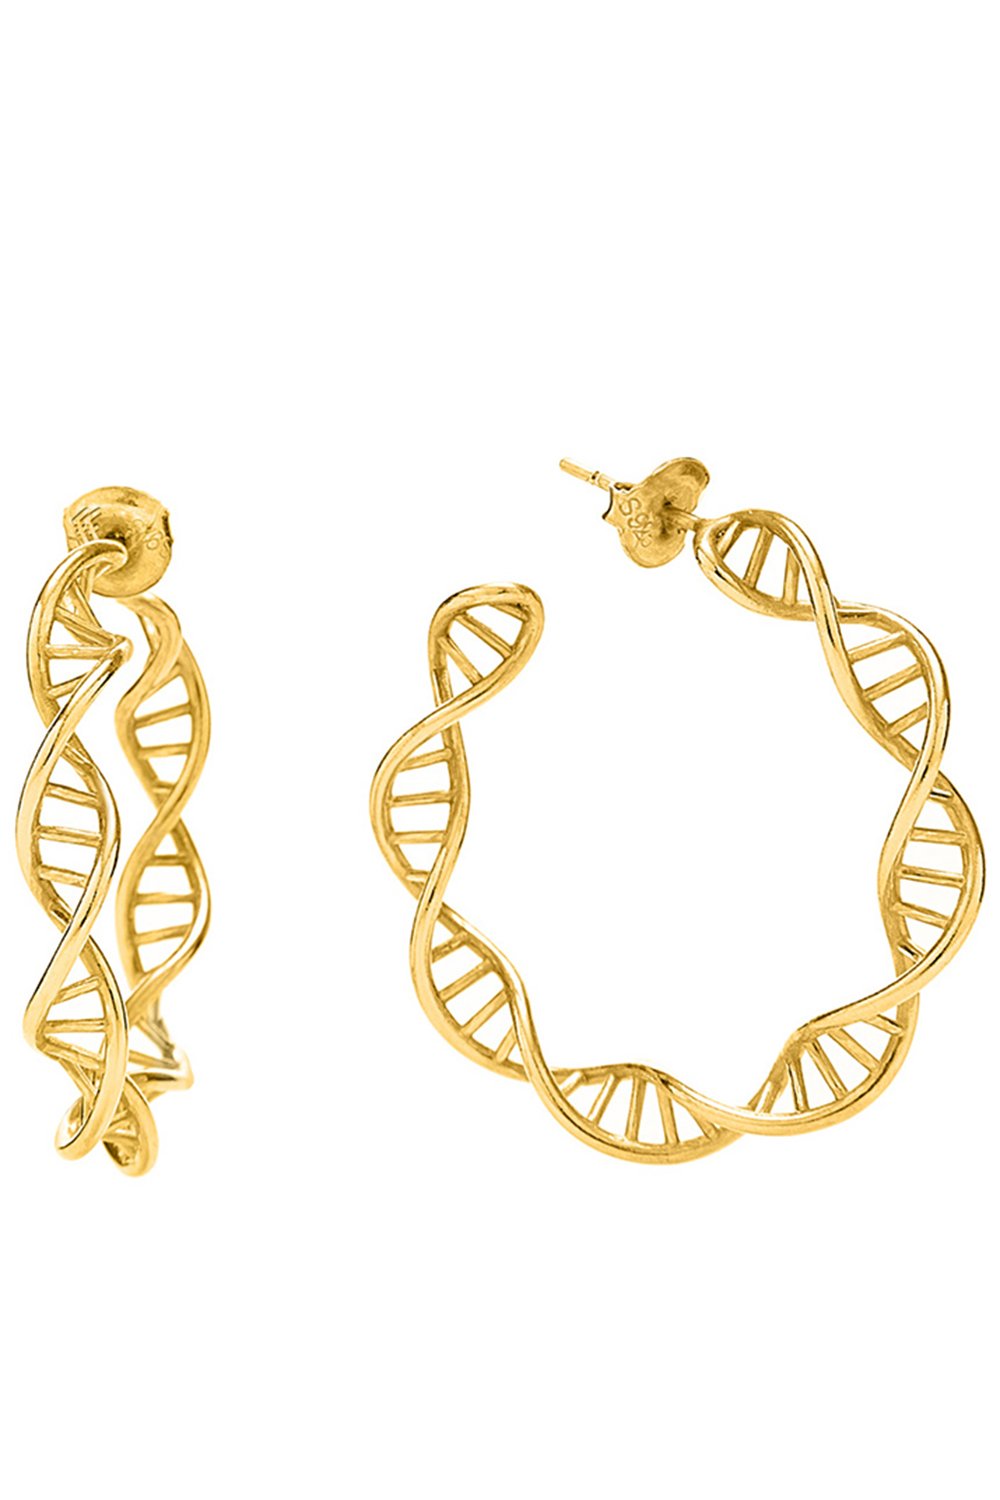 FOLLI FOLLIE – Γυναικεία ασημένια σκουλαρίκια FOLLI FOLLIE STYLE DNA χρυσά 1E20S002Y